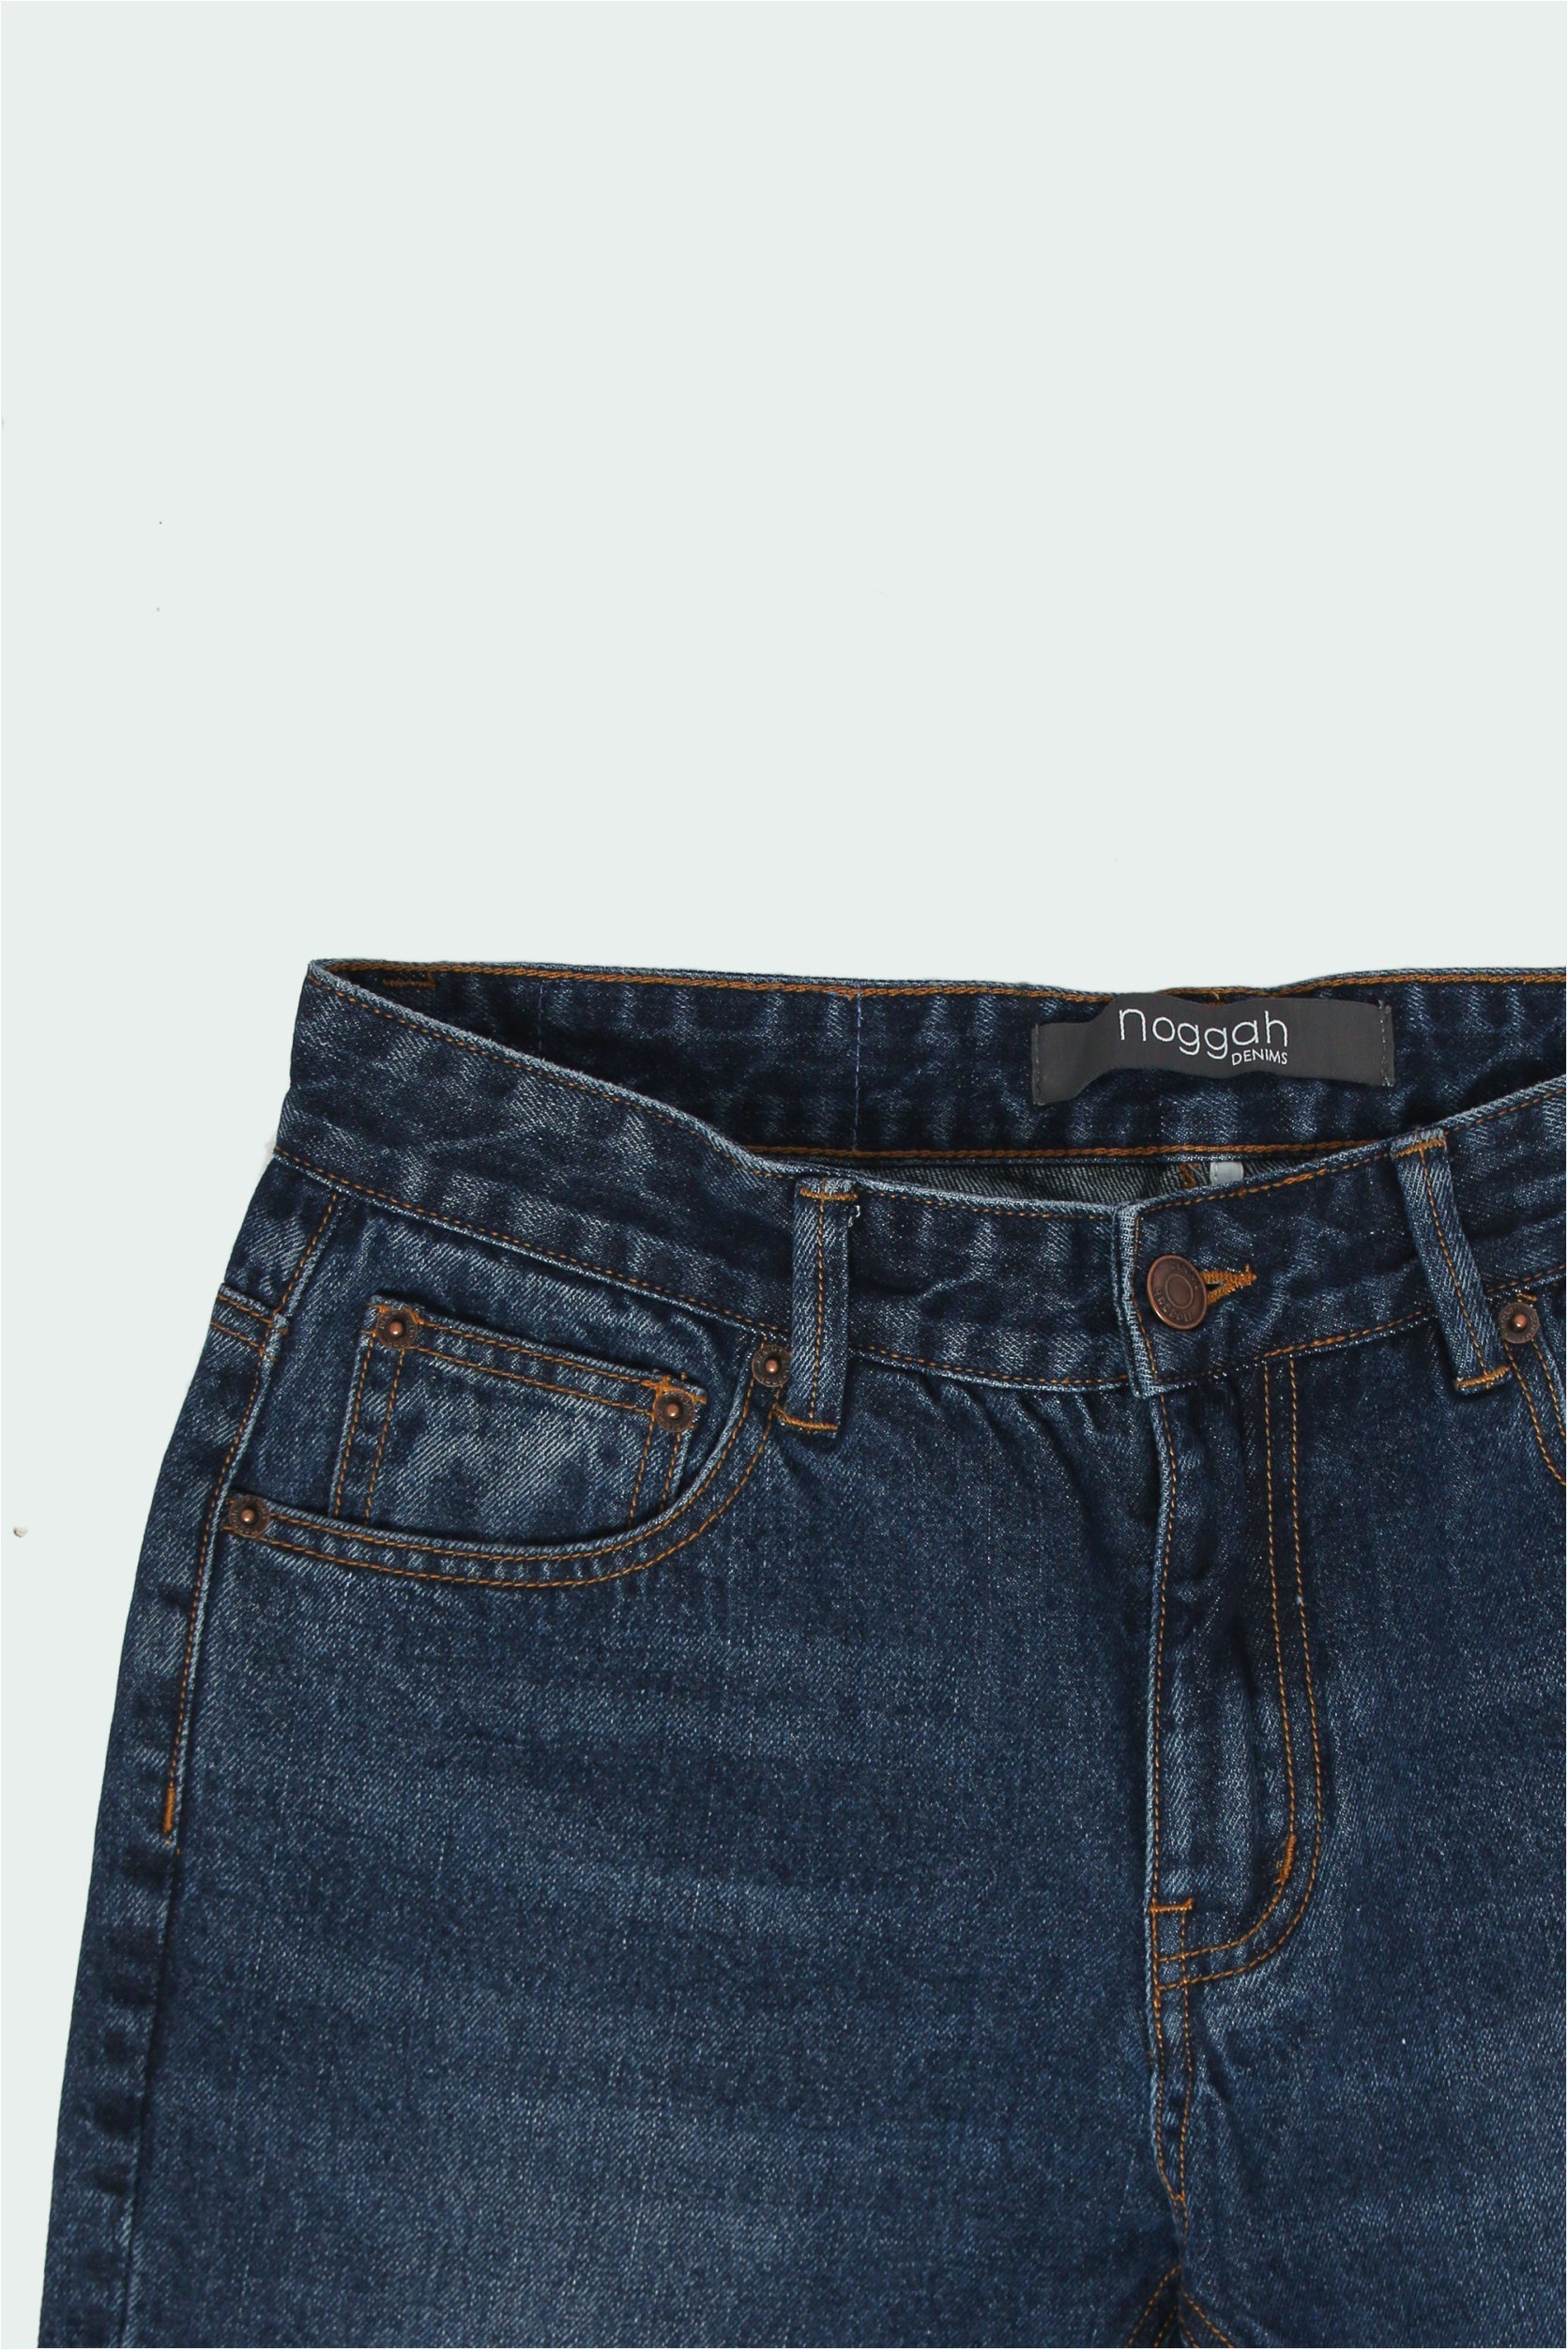 Regular Fit Jeans Men Clothing | Men Jeans Regular Fit Denim | Mens Jean  Pocket Design - Jeans - Aliexpress